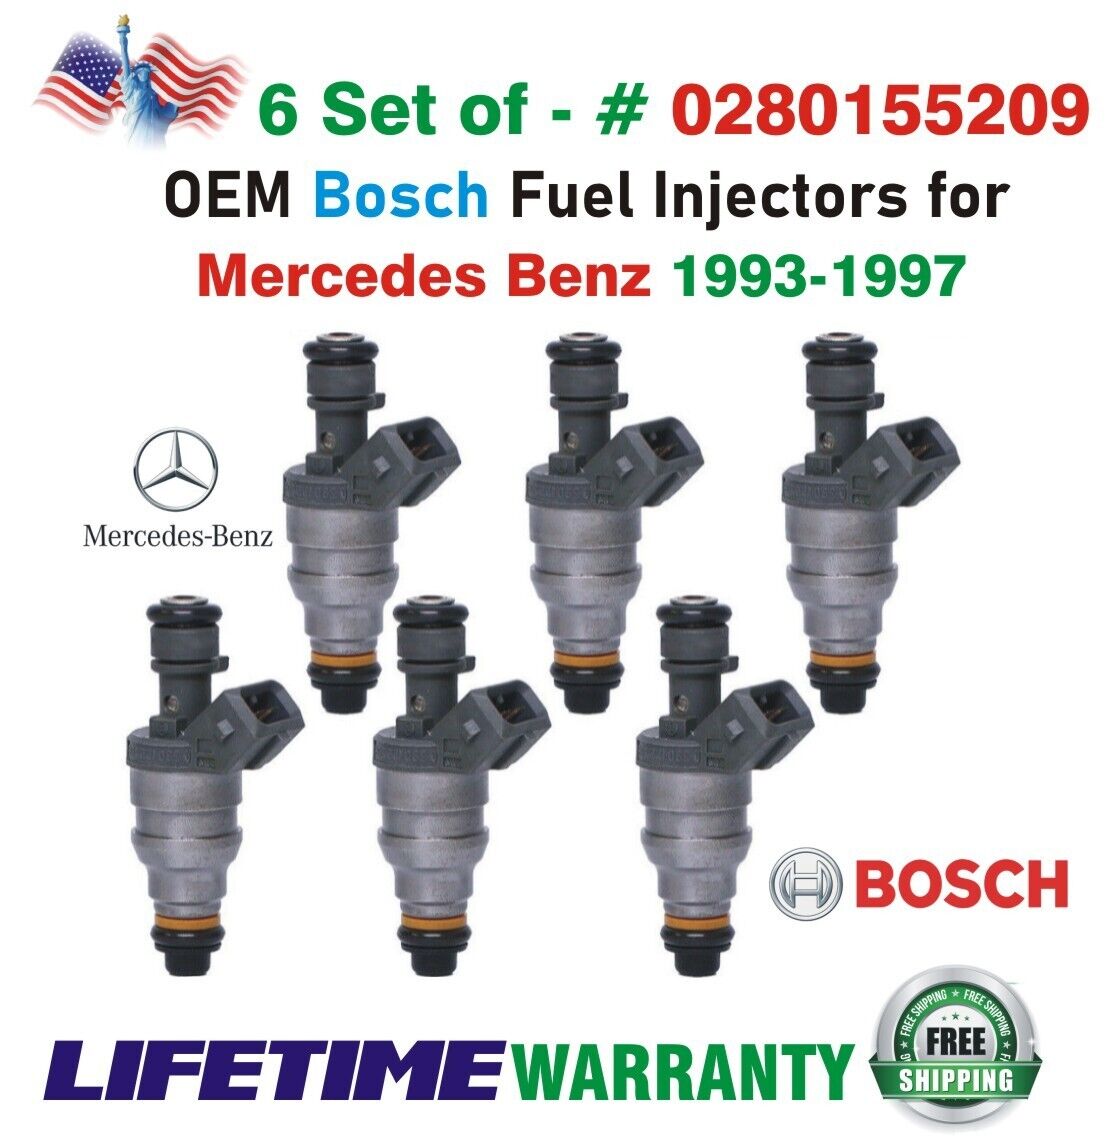 Genuine Bosch x6 Fuel Injectors for 1993-1997 Mercedes Benz I4 & I6 #0280155209